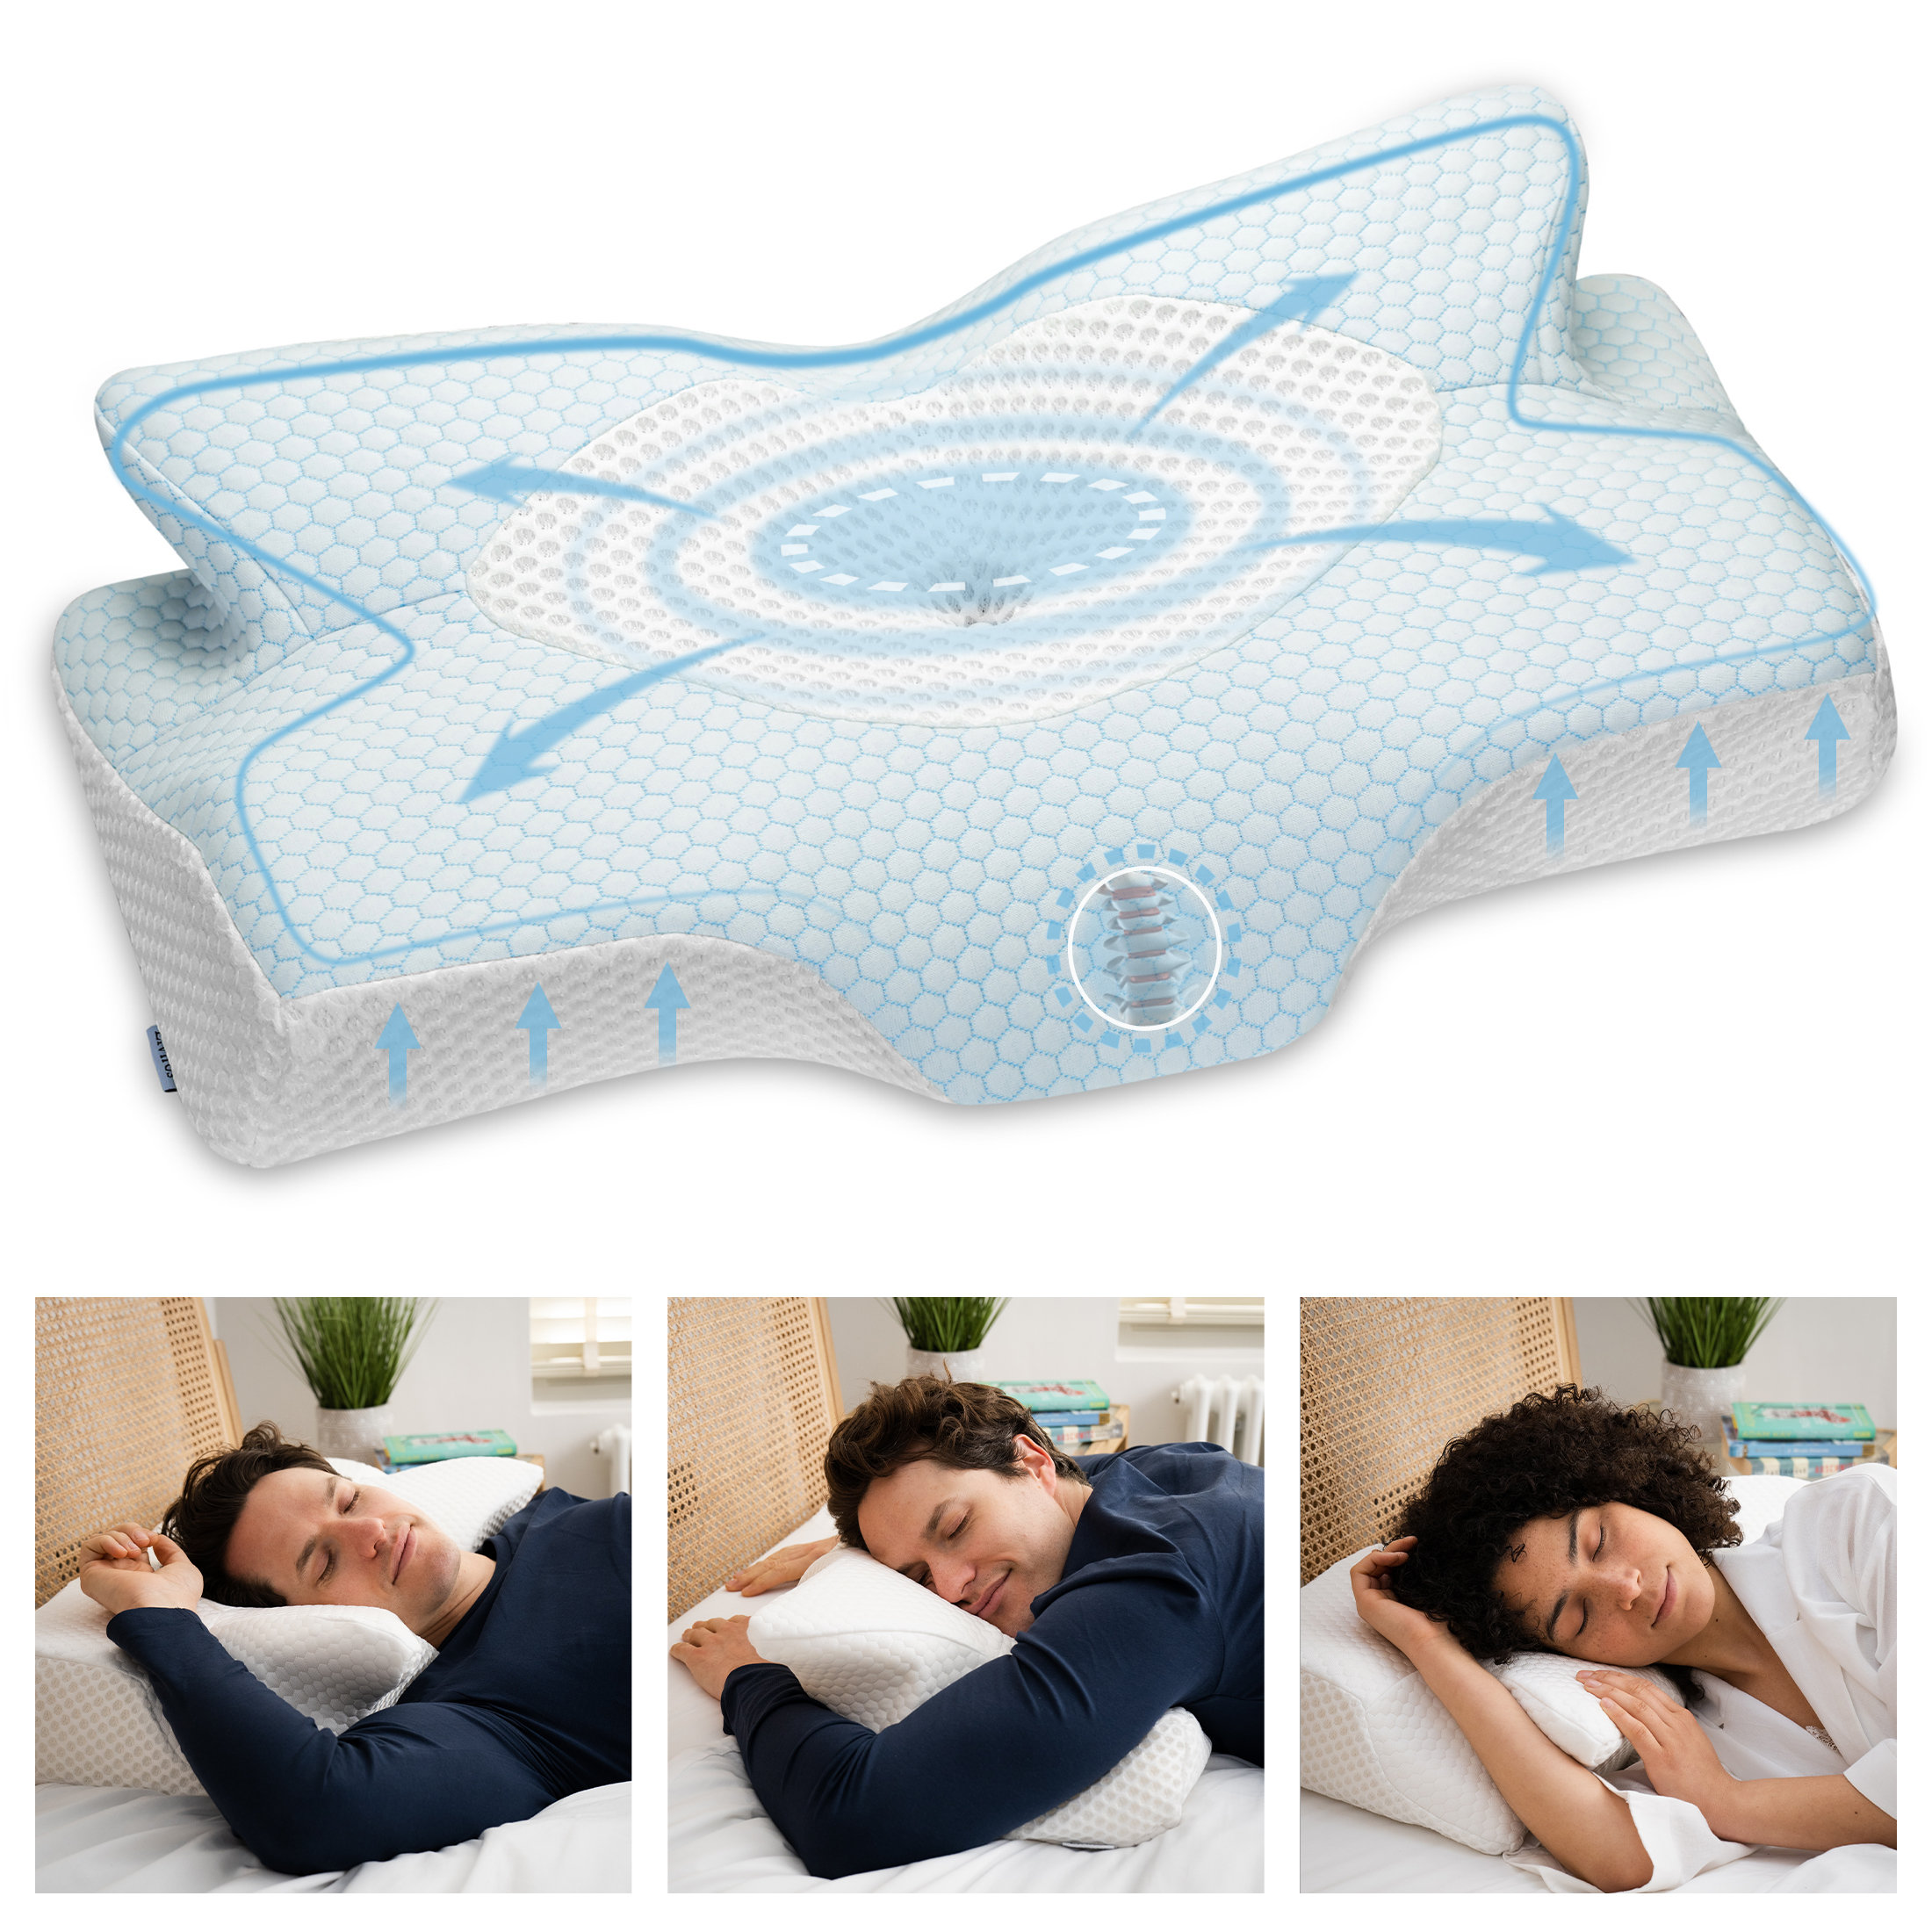 https://assets.wfcdn.com/im/91383113/compr-r85/2551/255185542/vandyke-memory-foam-cooling-support-pillow.jpg